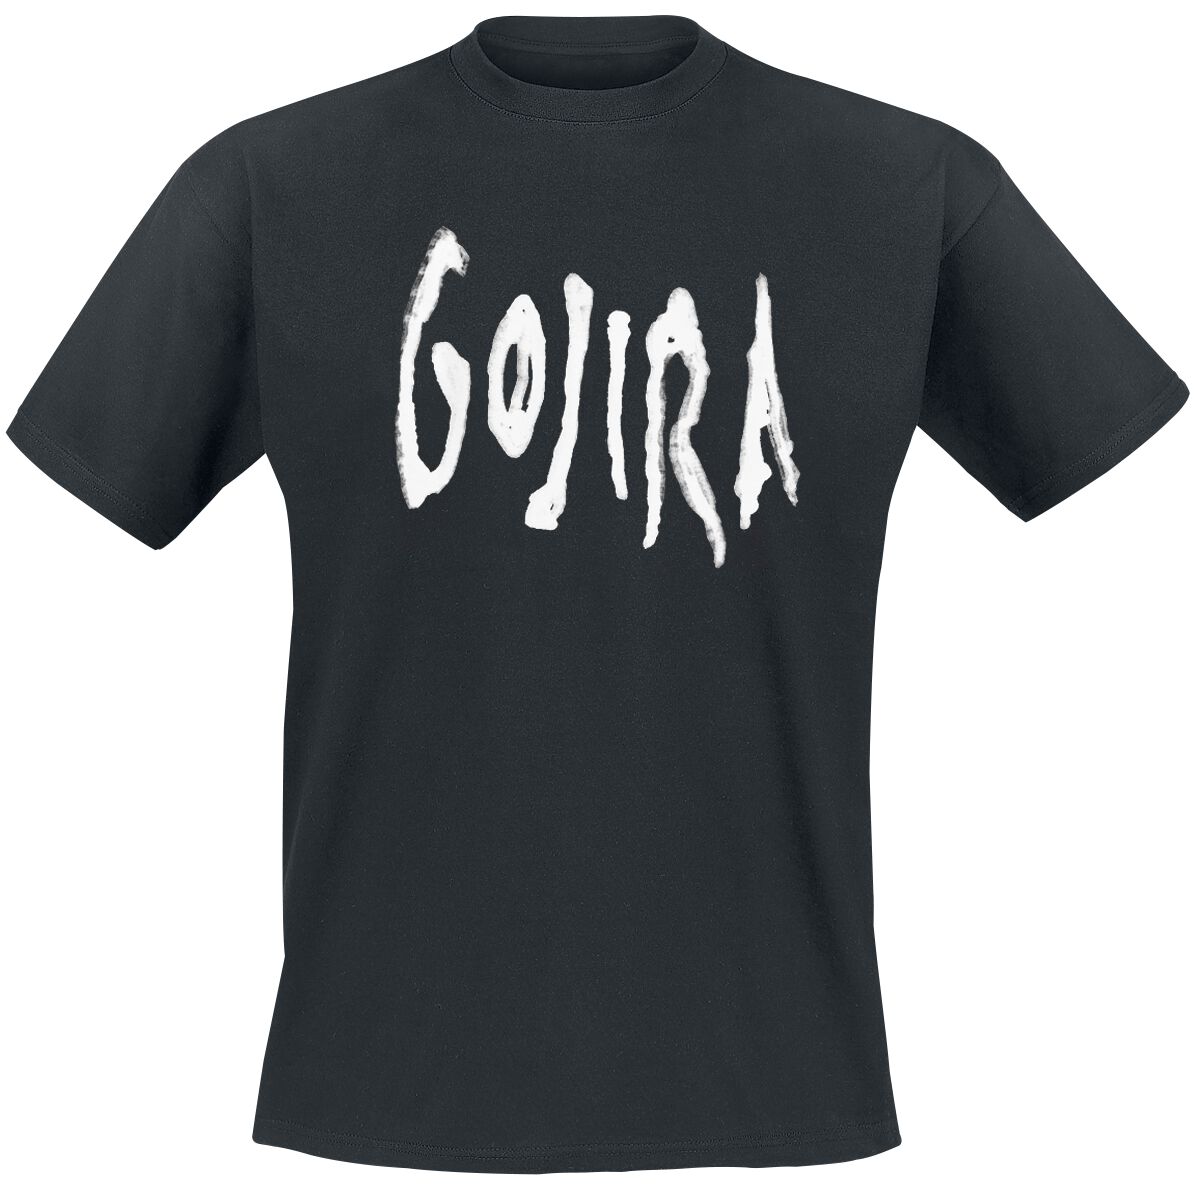 Gojira T-Shirt - Logo Distort - M bis XL - für Männer - Größe M - schwarz  - Lizenziertes Merchandise!